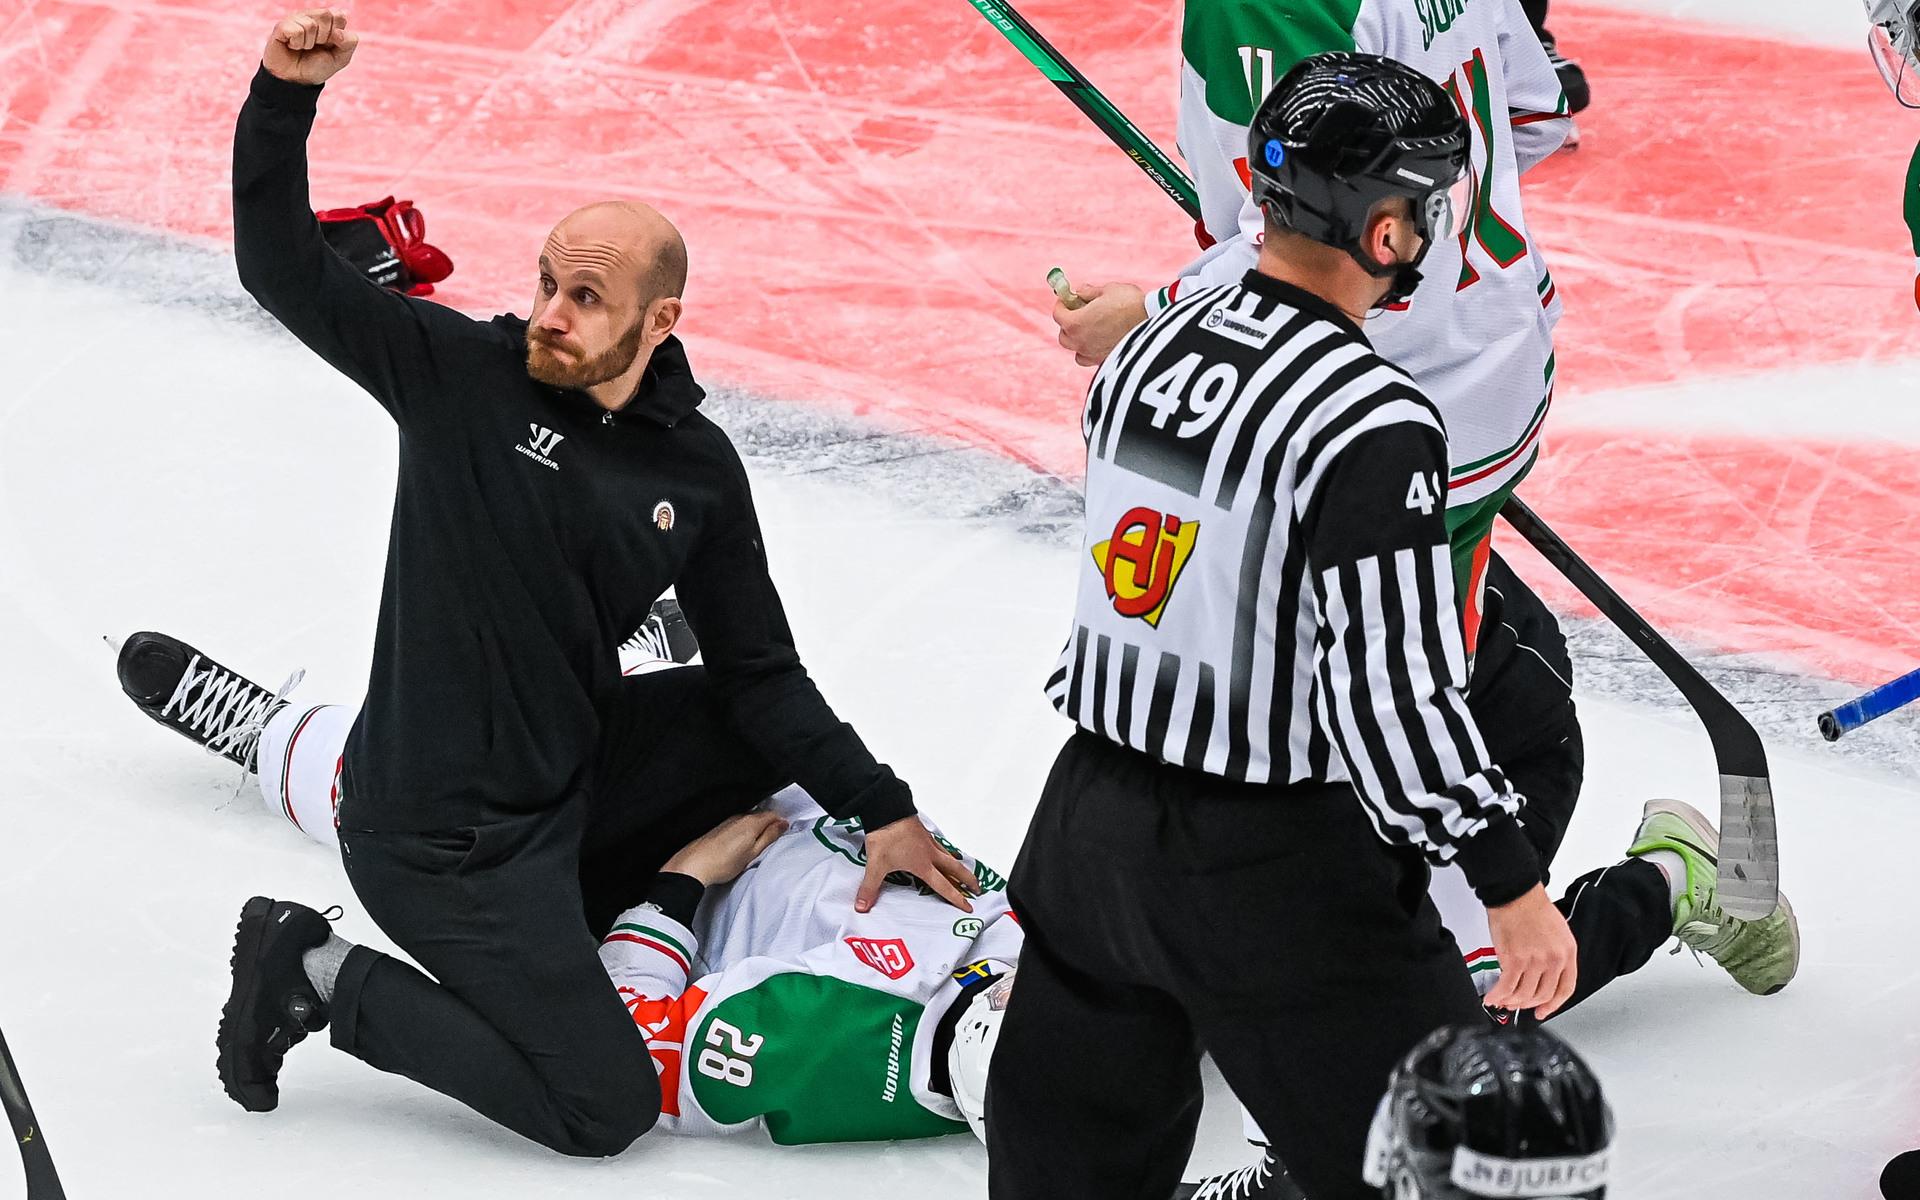 Efter en smäll mot huvudet blev Rögles Anton Bengtsson liggandes på isen. Han fick snabbt vård.